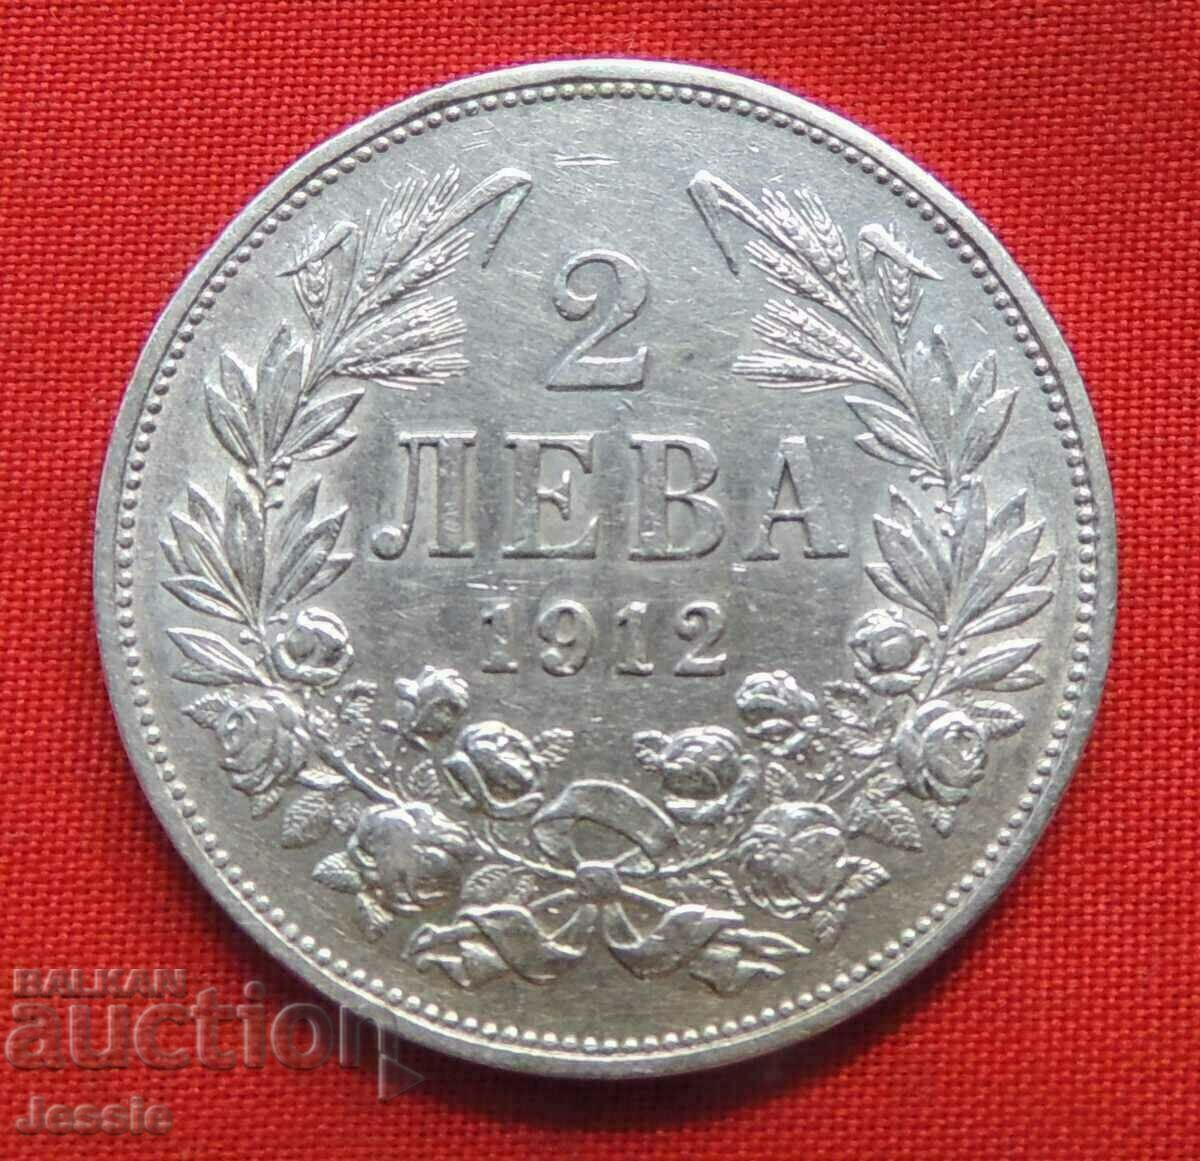 2 leva 1912 silver №4